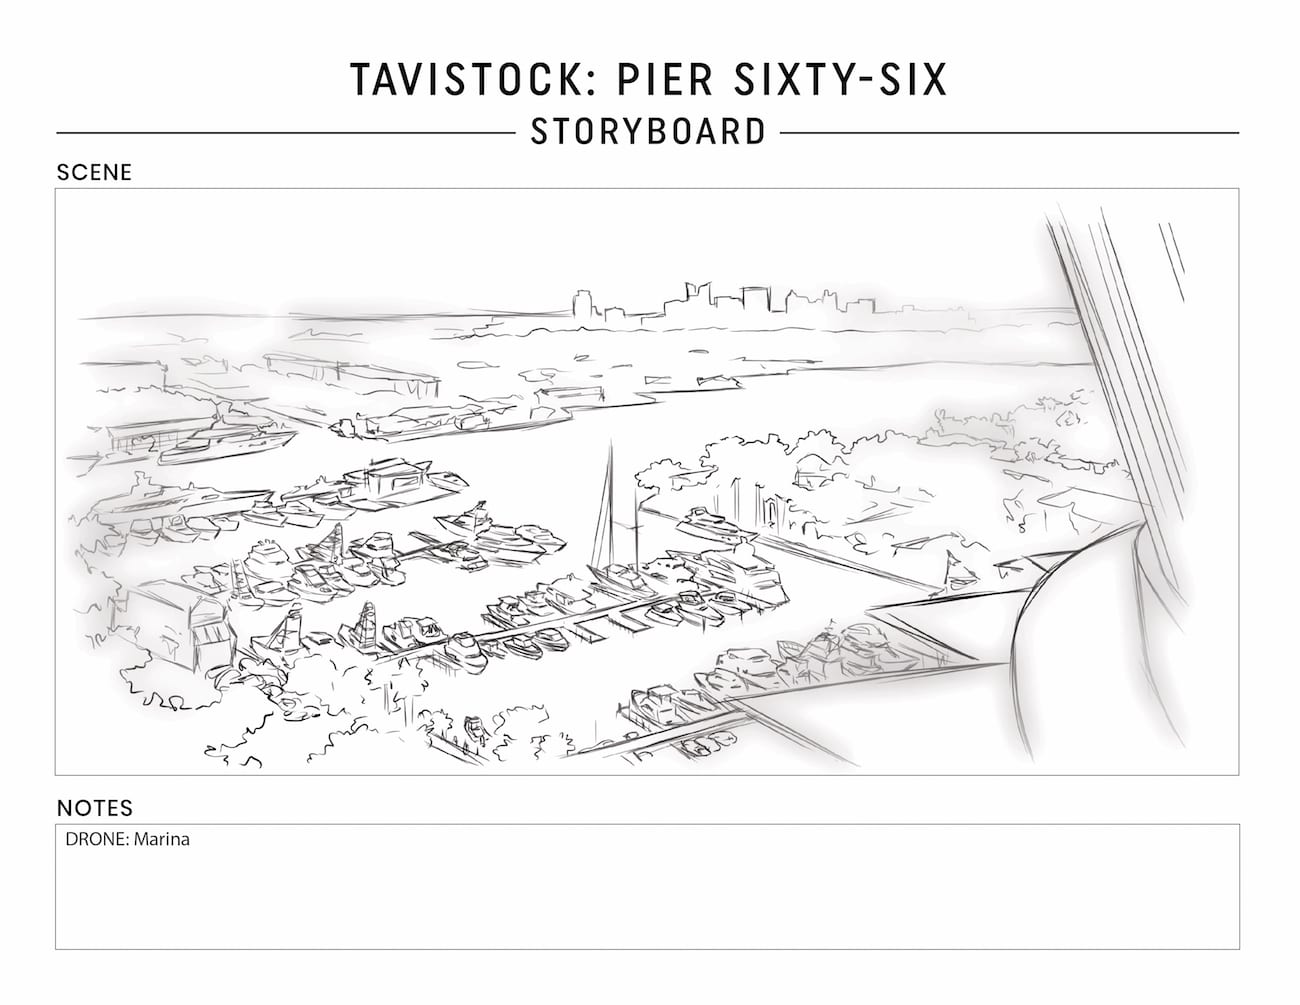 Tavistock Development Company C&I Studios Marketing Solutions Pier Sixty Six Storyboard Drone Marina